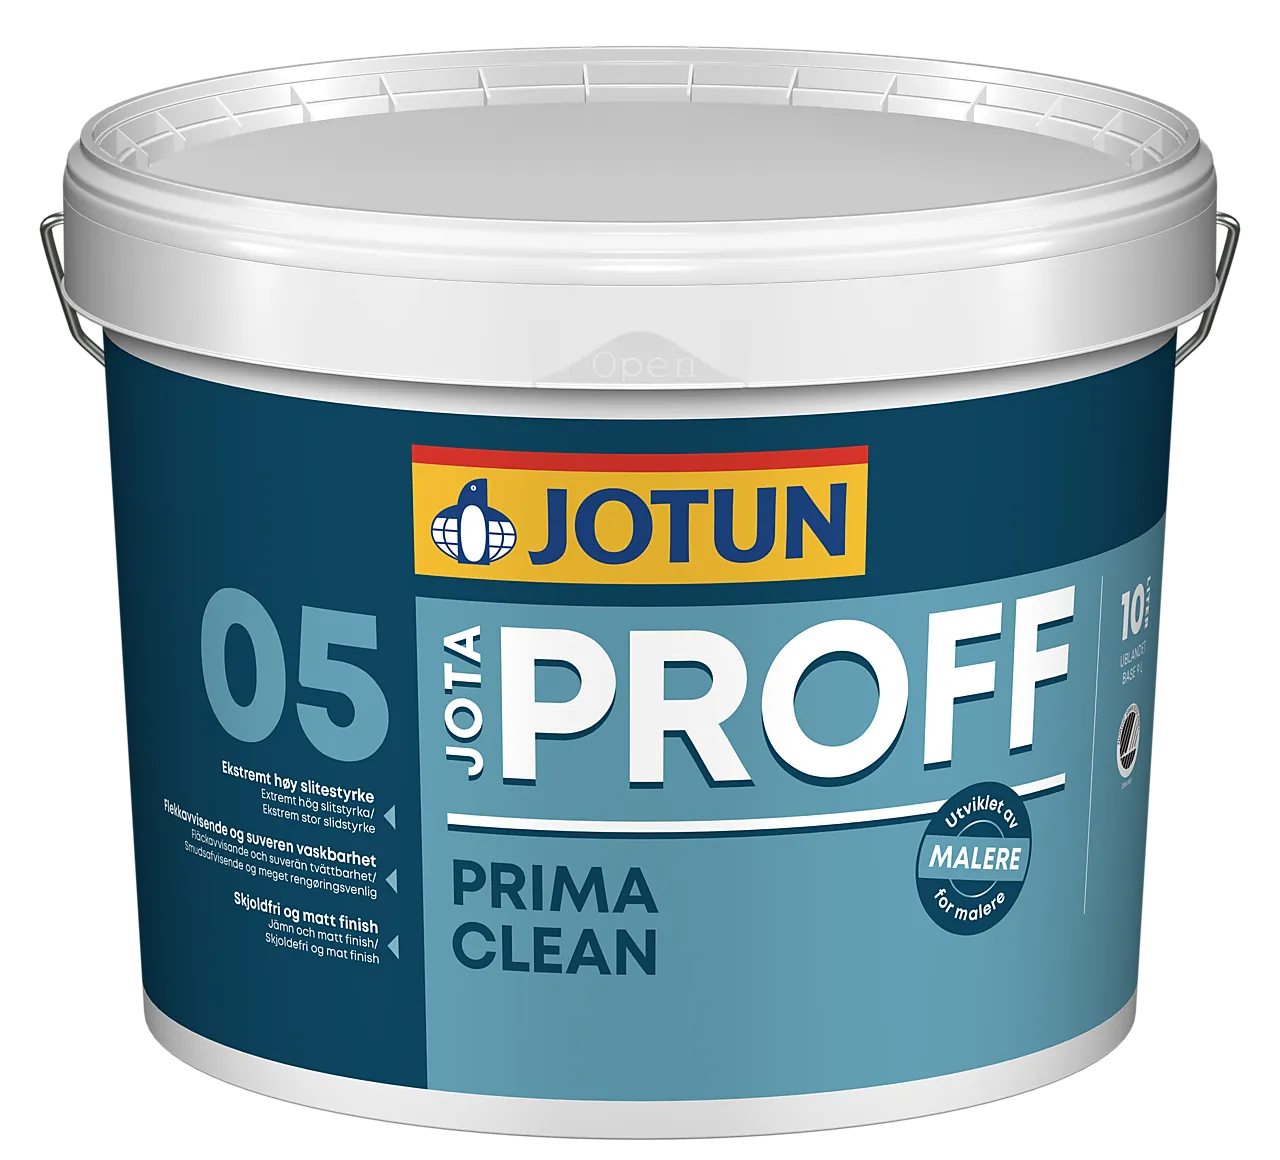 Jotun Prima Clean 05 c-base 9 liter